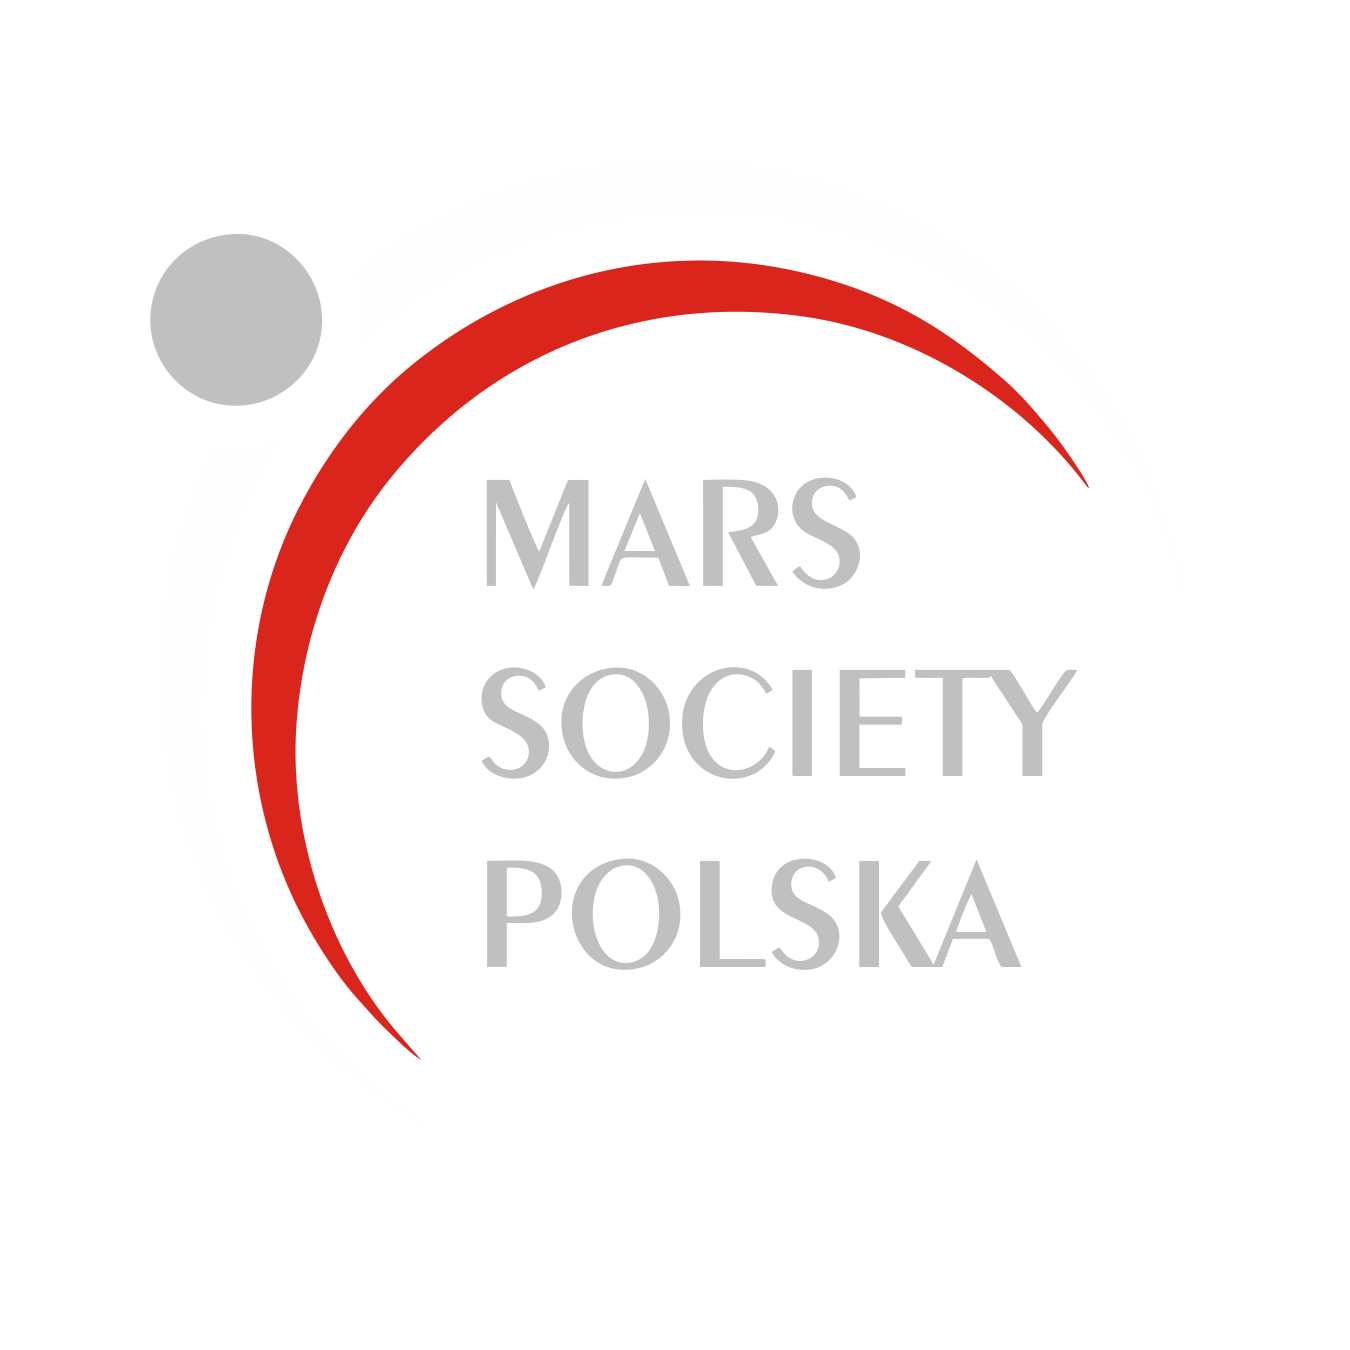 MARS SOCIETY POLSKA